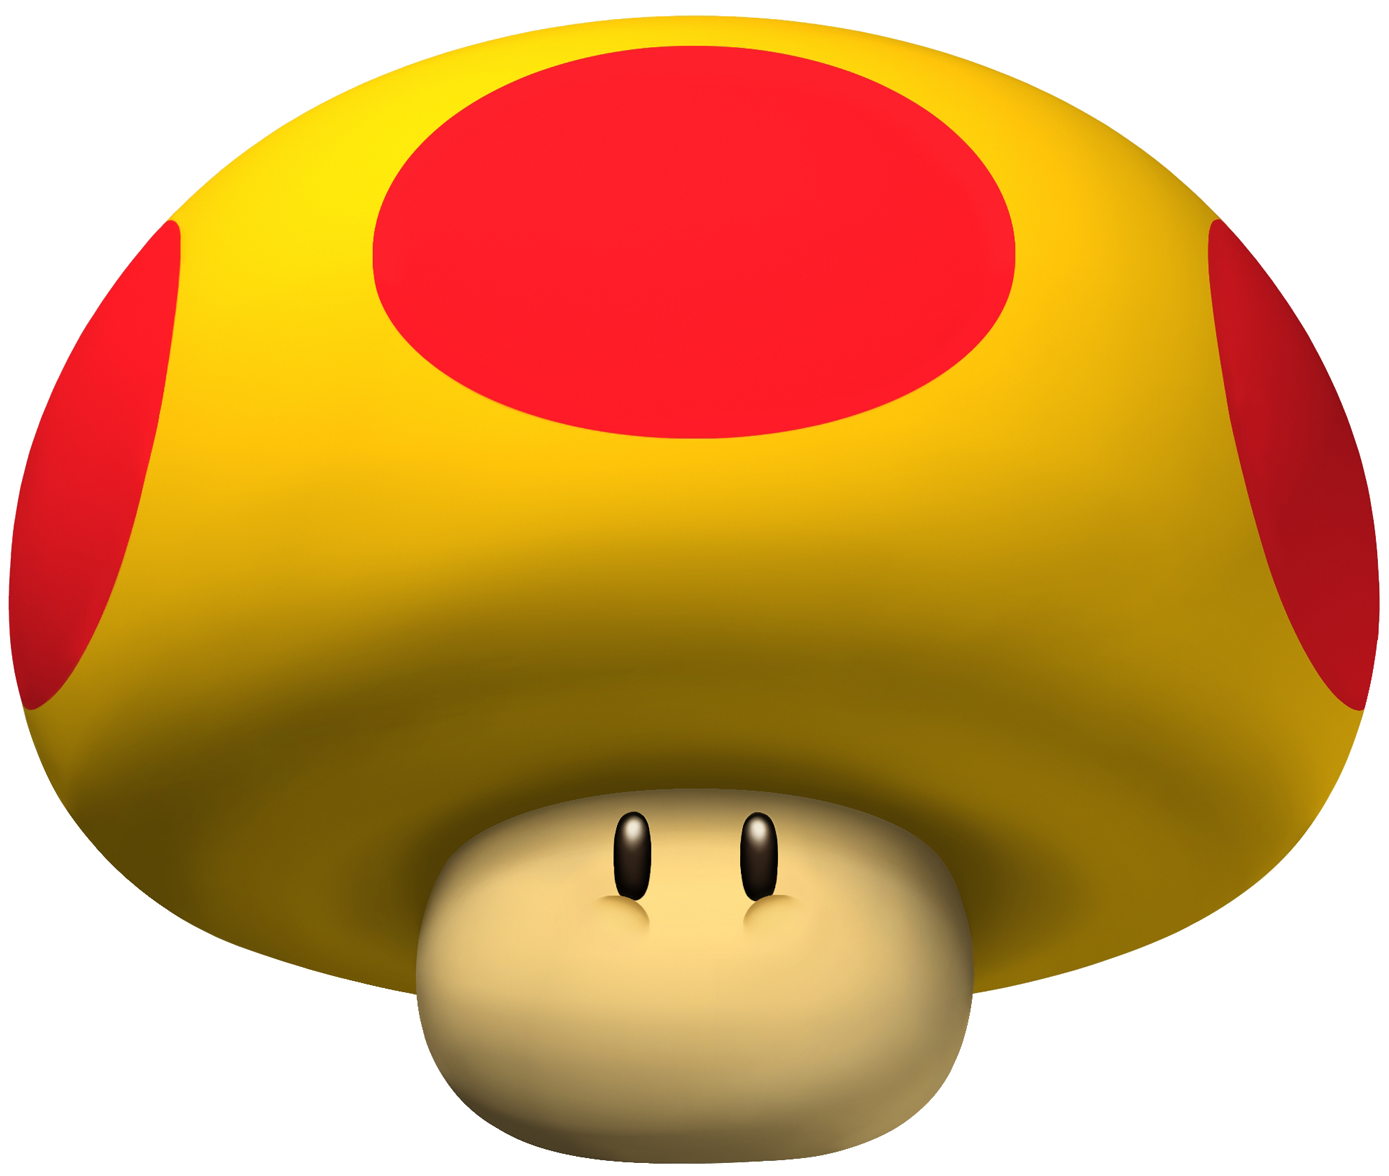 Mushroom4